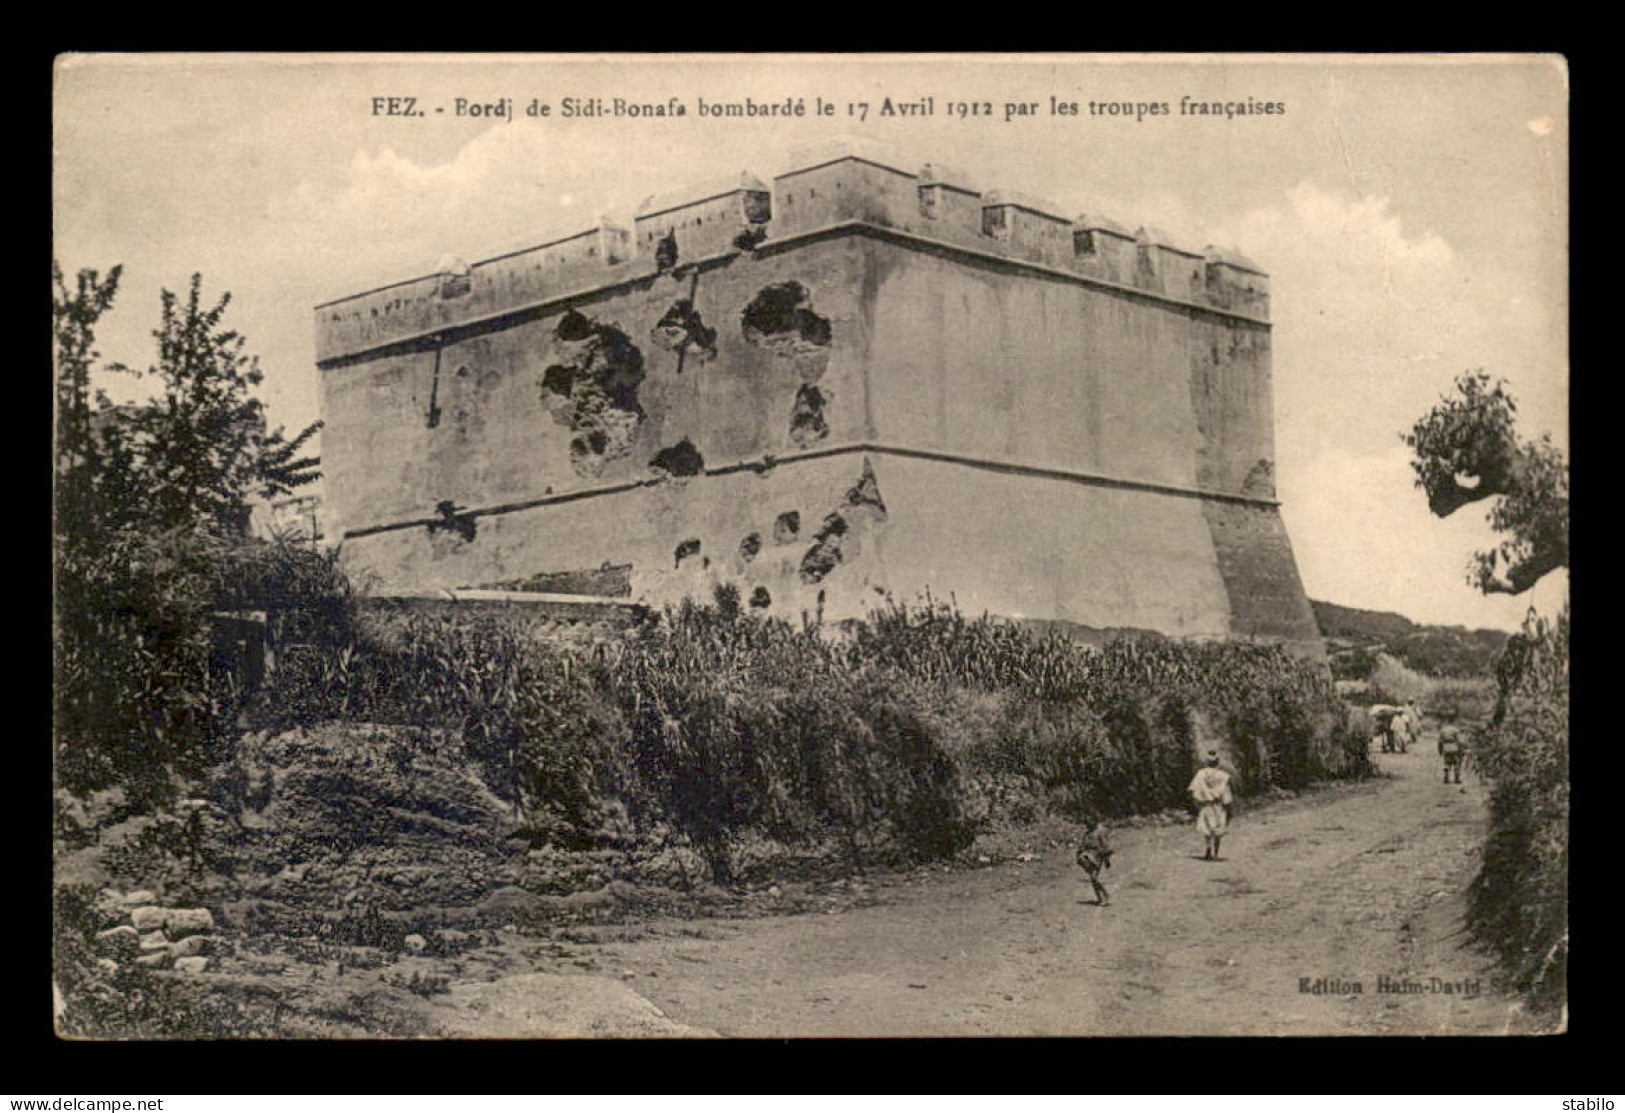 MAROC - FEZ - BORDJ DE SIDI-BANAFA BOMBARDE LE 17 AVRIL 1912 PAR LES TROUPES FRANCAISES - Fez